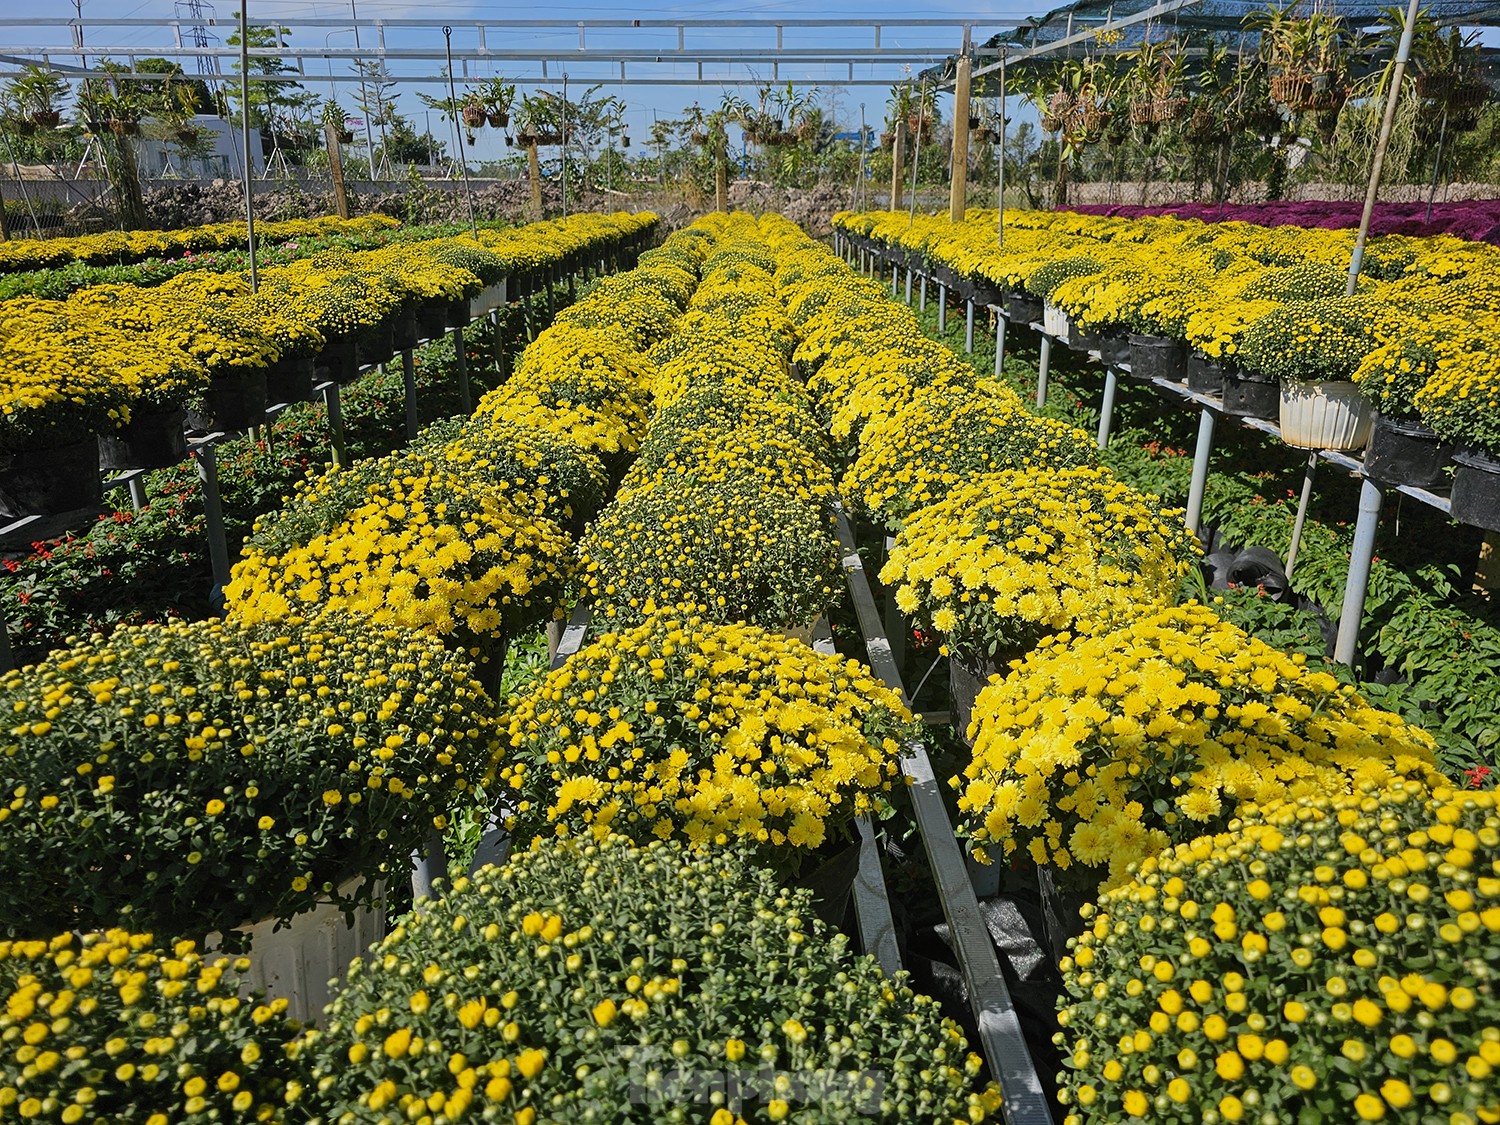 Cúc ngũ sắc lần đầu xuất hiện ở làng hoa lớn nhất miền Tây - Ảnh 11.